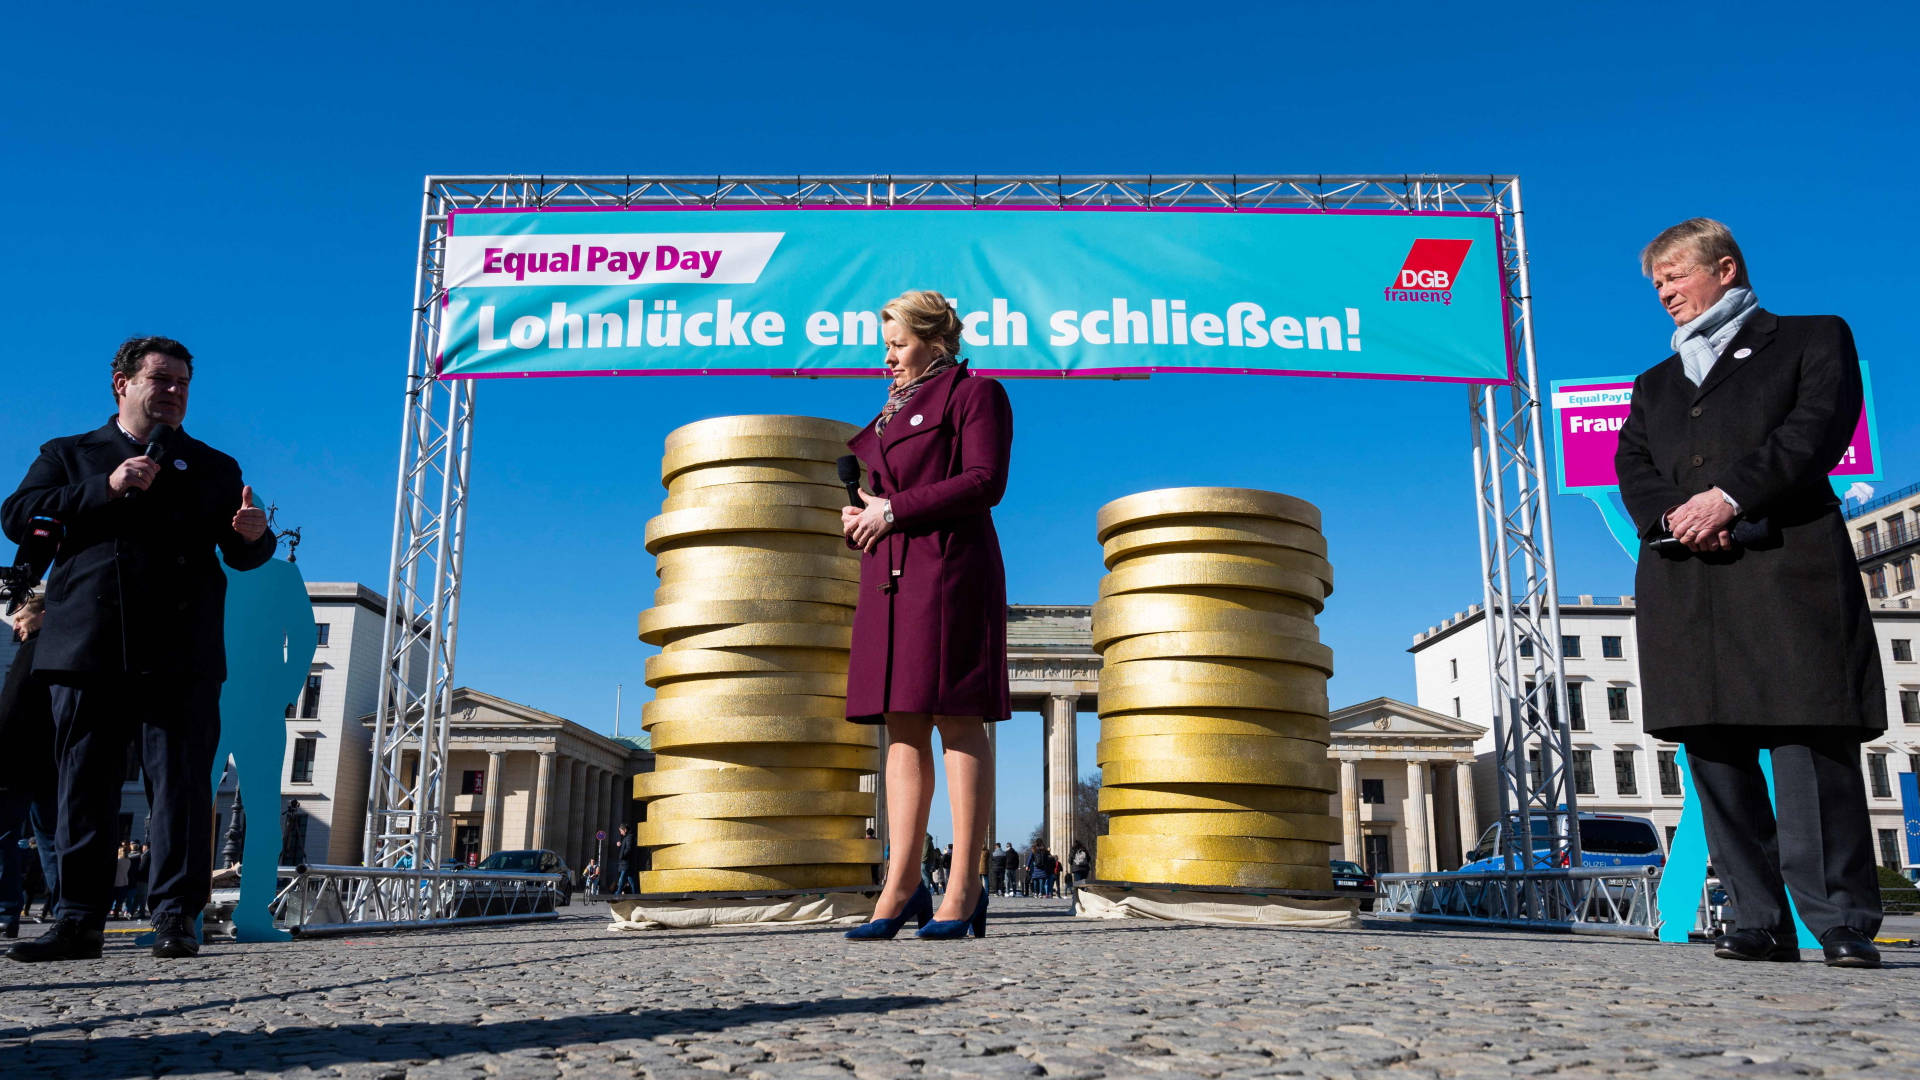 Bundesarbeitsminister Heil, Berlins Regierende Bürgermeisterin Giffey und DGB-Chef Hoffmann (v.l.n.r.) bei einer Aktion zum "Equal Pay Day" vor dem Brankdenburger Tor in Berlin. | AFP